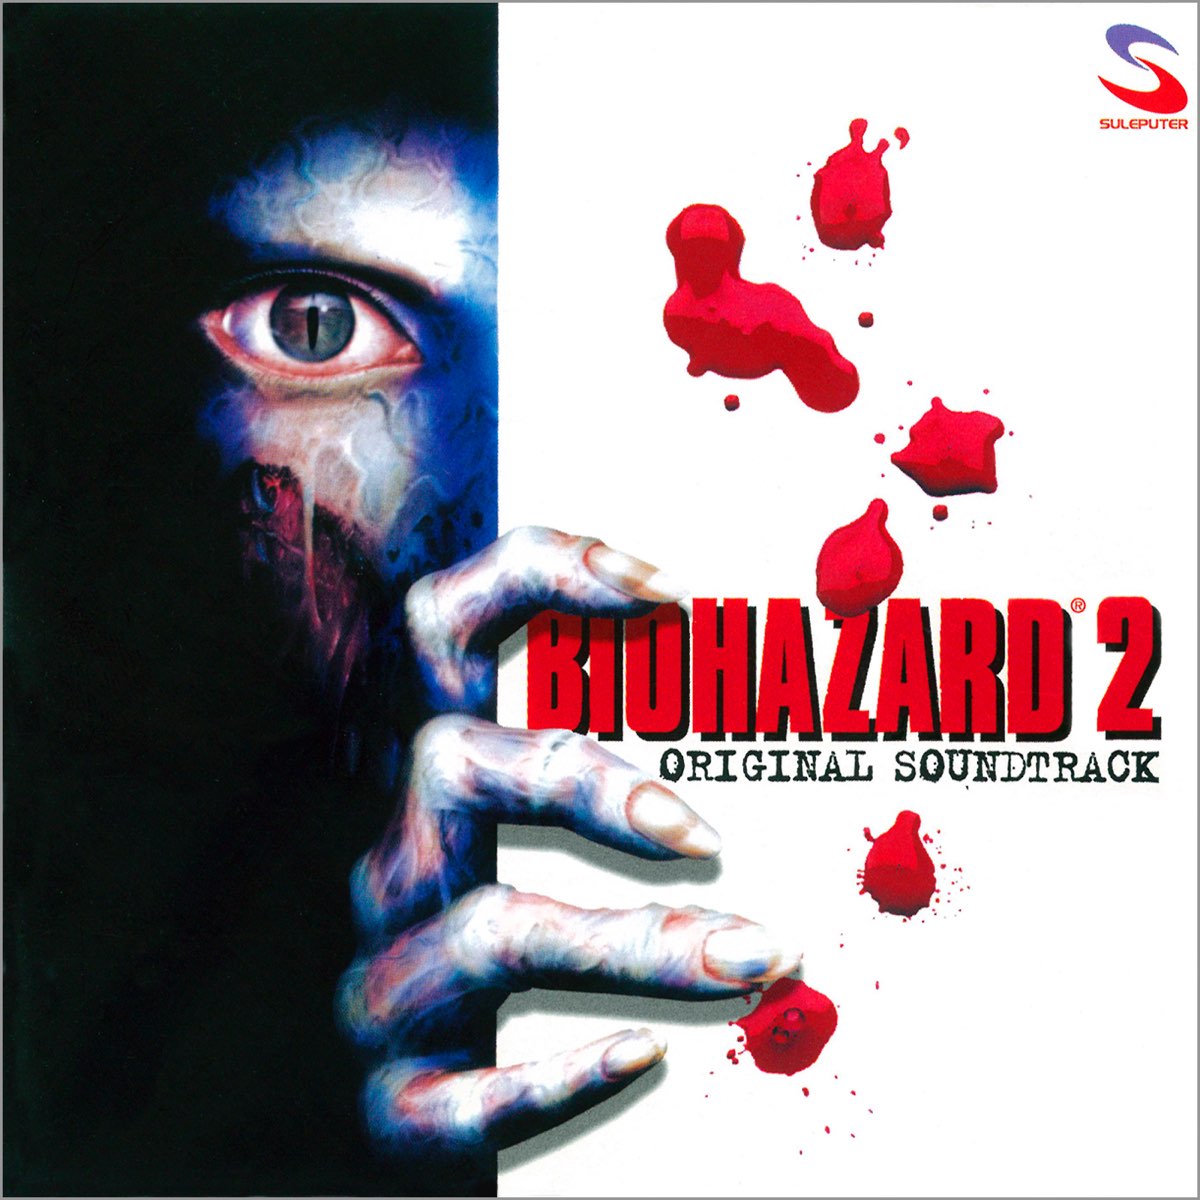 Resident Evil 2 (Original Soundtrack) - Album by Capcom Sound Team